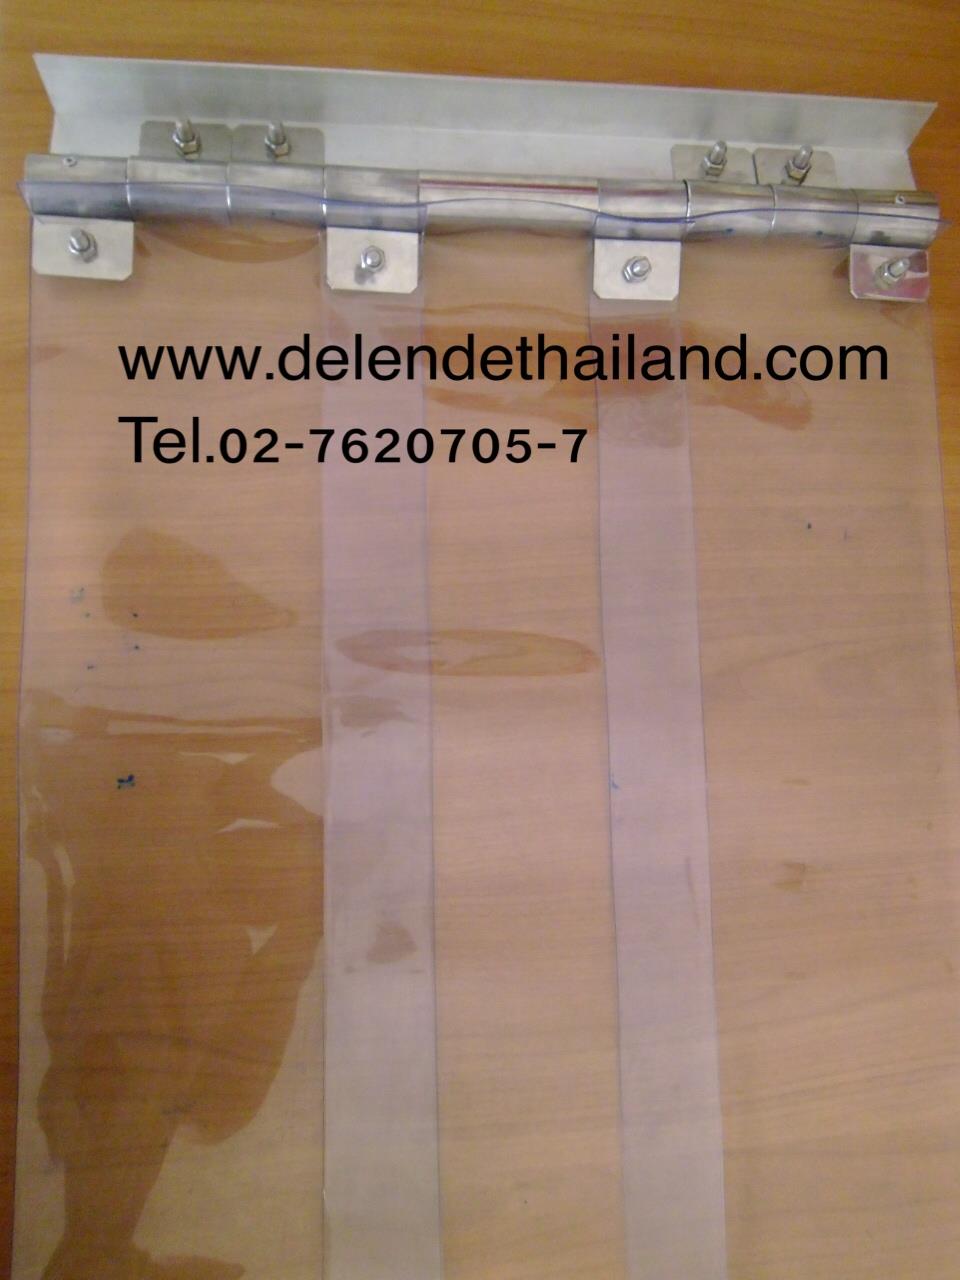 ม่านพลาสติก ใสธรรมดา / Standard Clear / PVC Strip Curtain